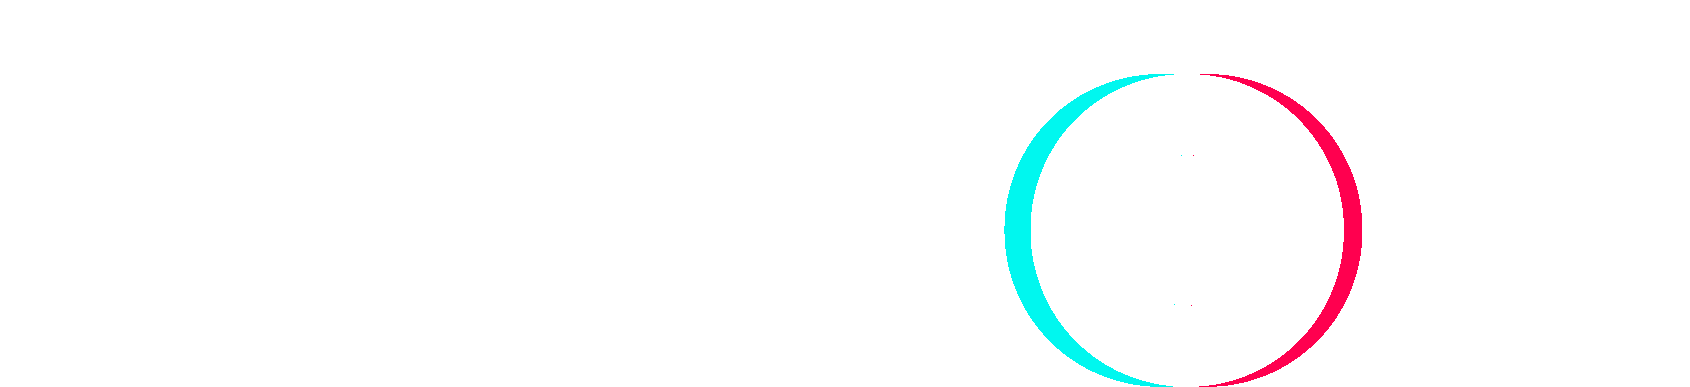 Printable Tik Tok Logo